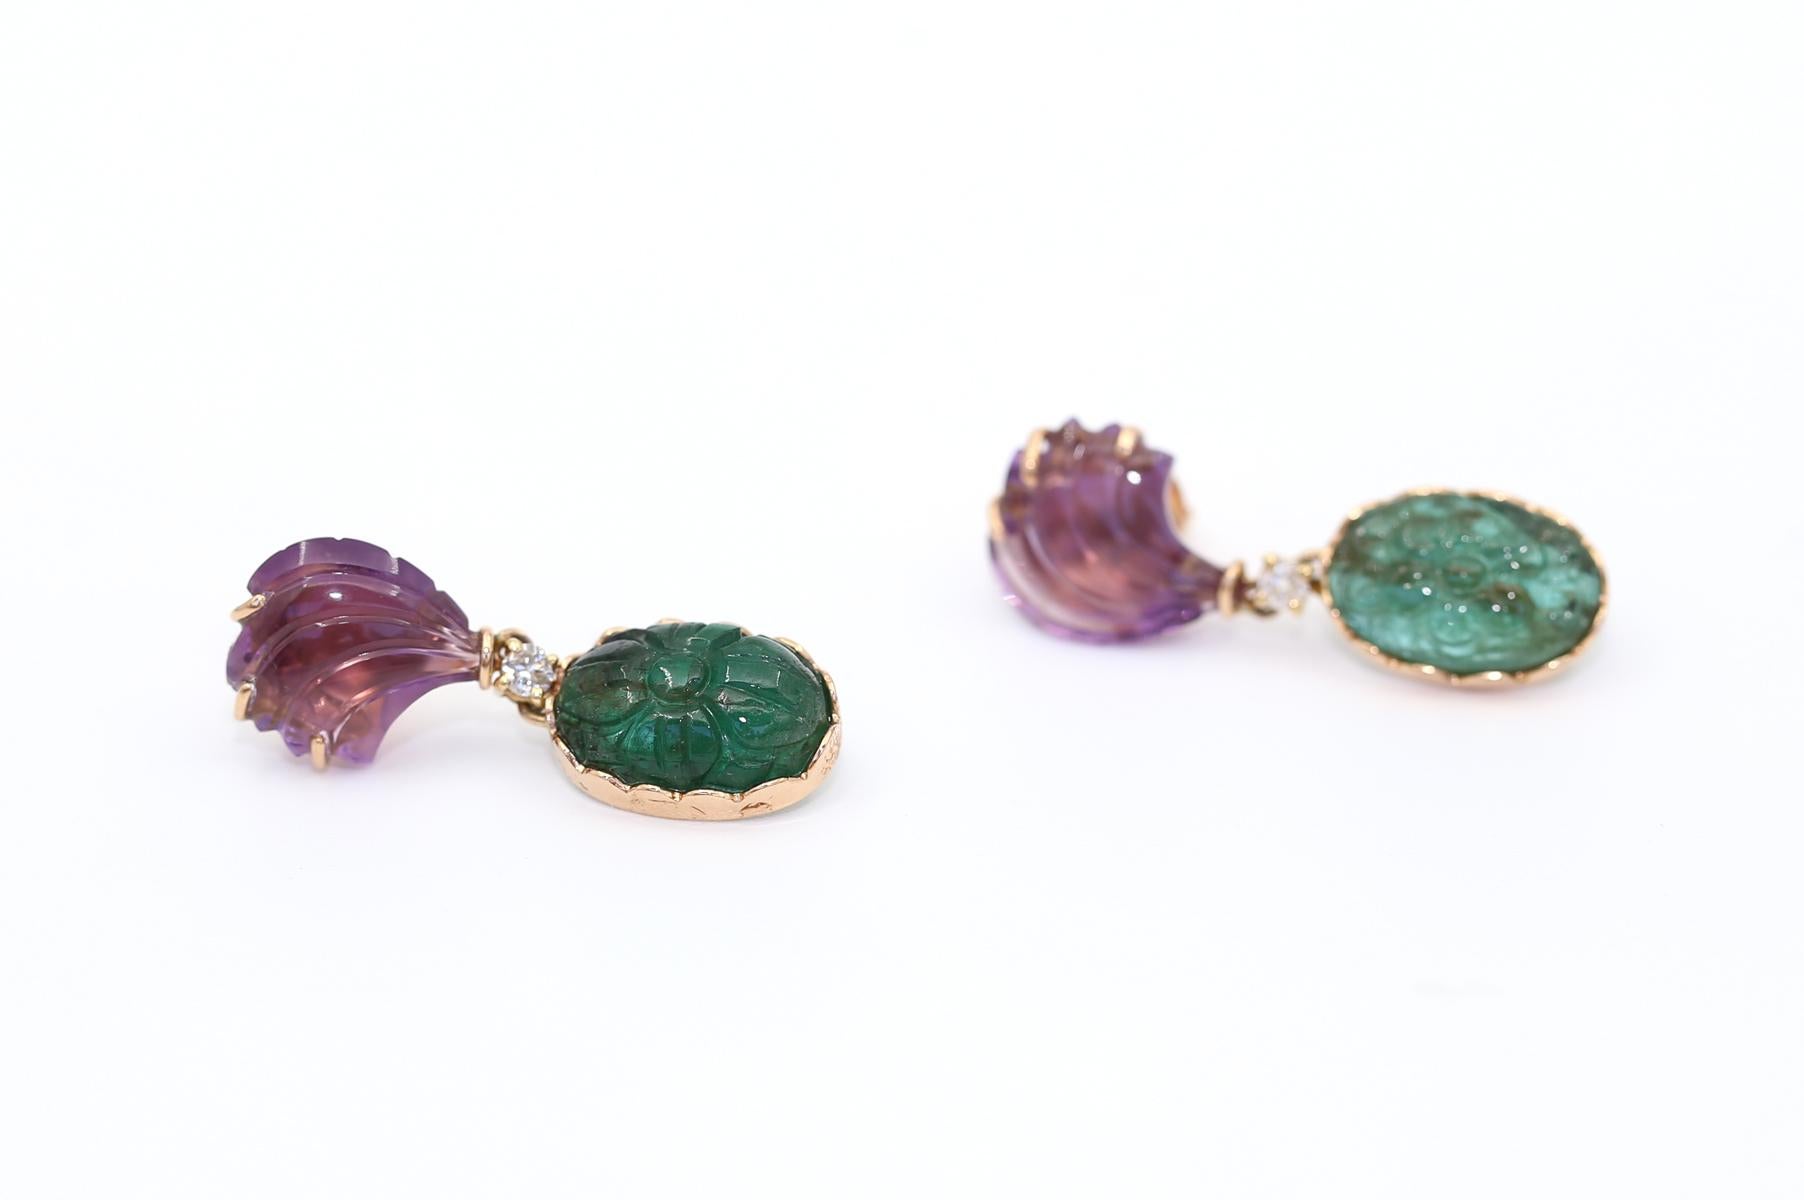 Emerald Cut Art Deco Style Carved Zambian Emerald Amethyst Earrings 18K Gold, 1975 For Sale